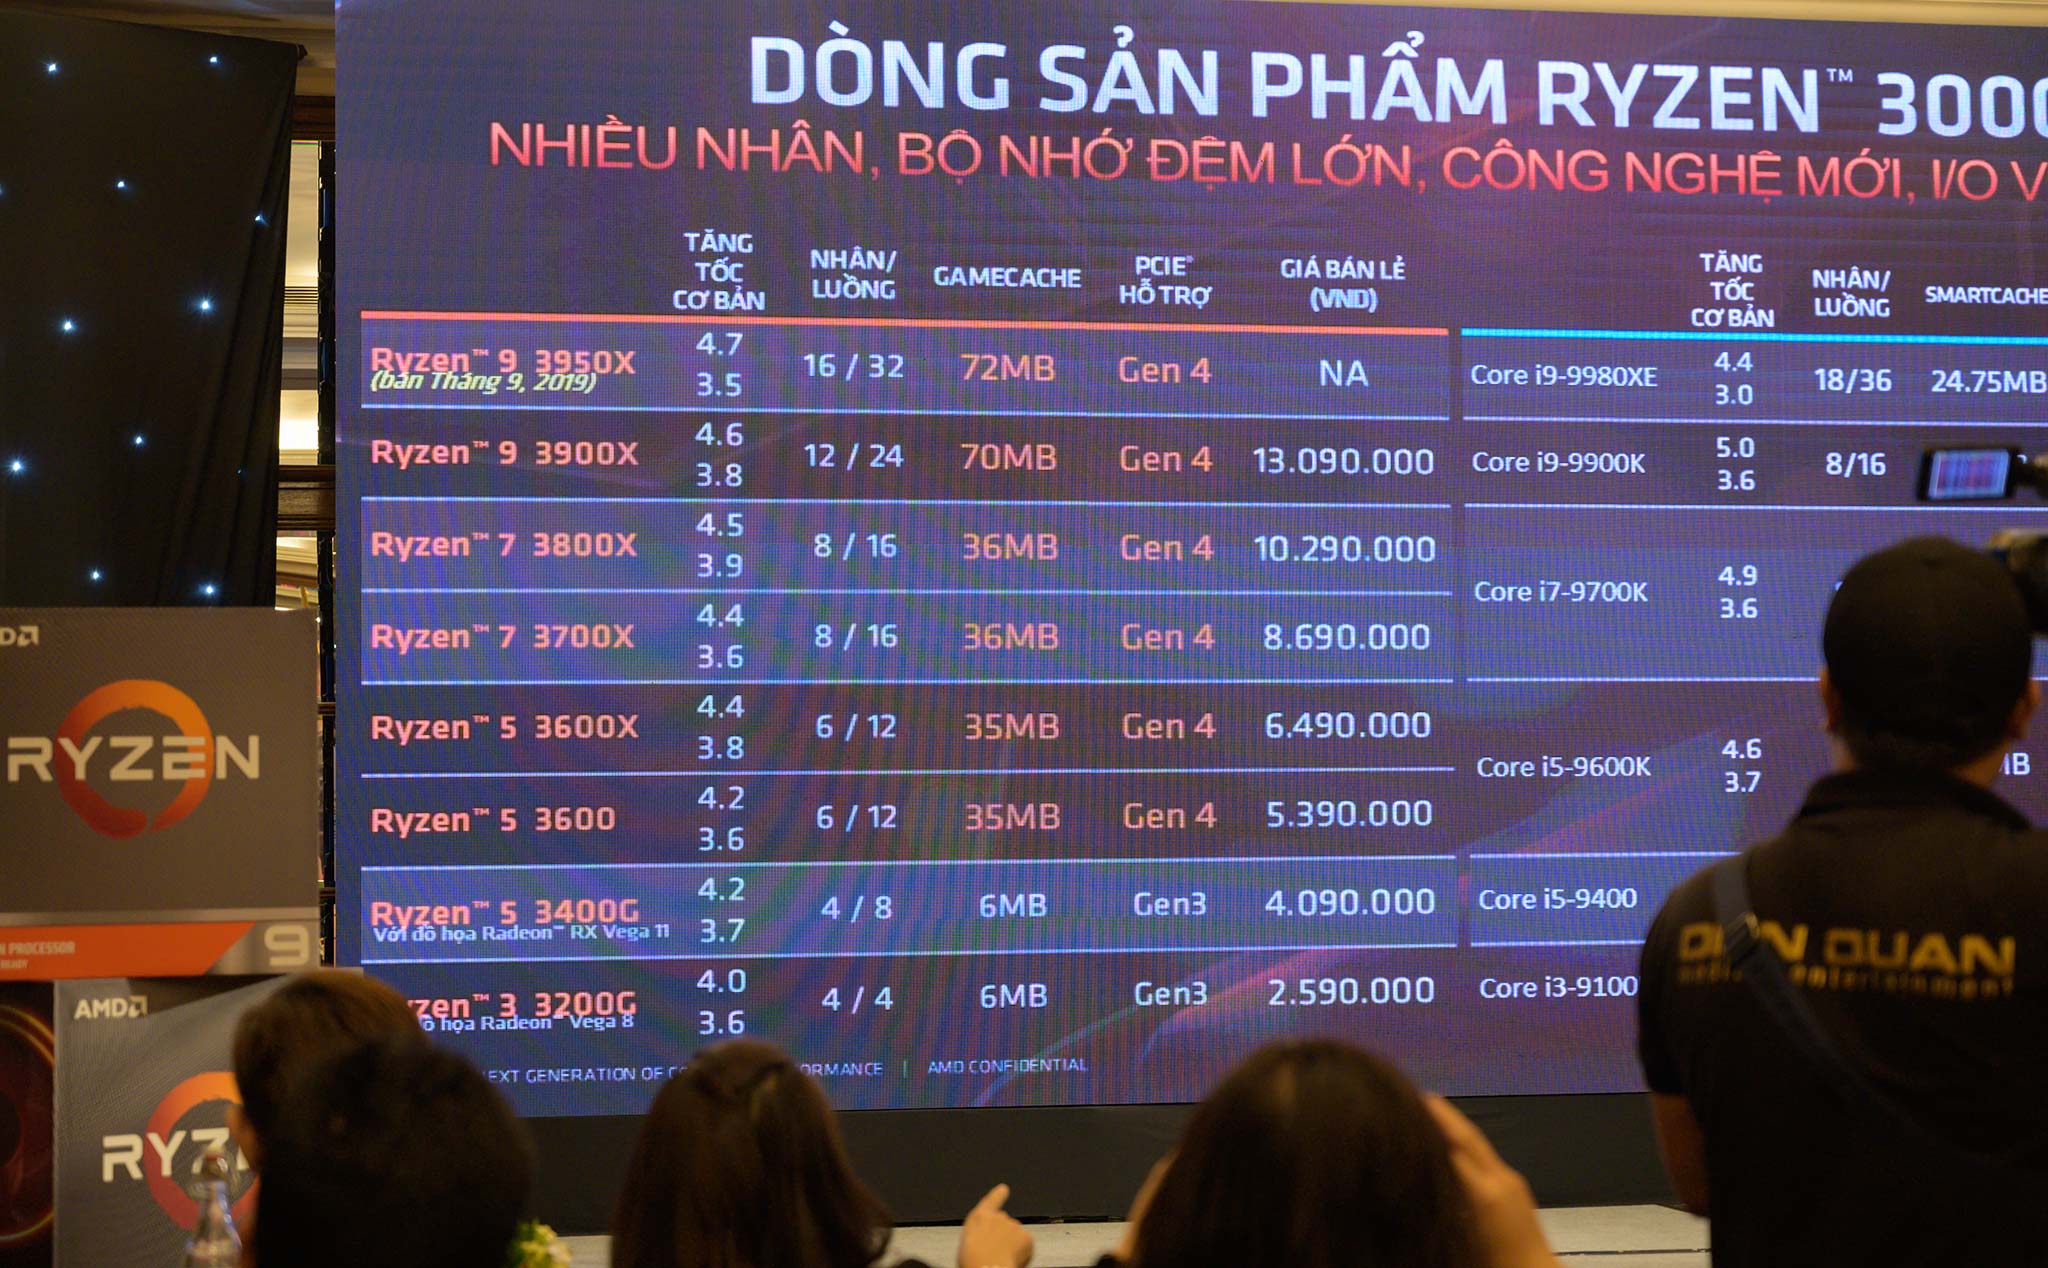 AMD công bố giá bán dòng vi xử lý Ryzen 3 và card đồ hoạ RX 5700 tại Việt Nam: từ 2,59 triệu